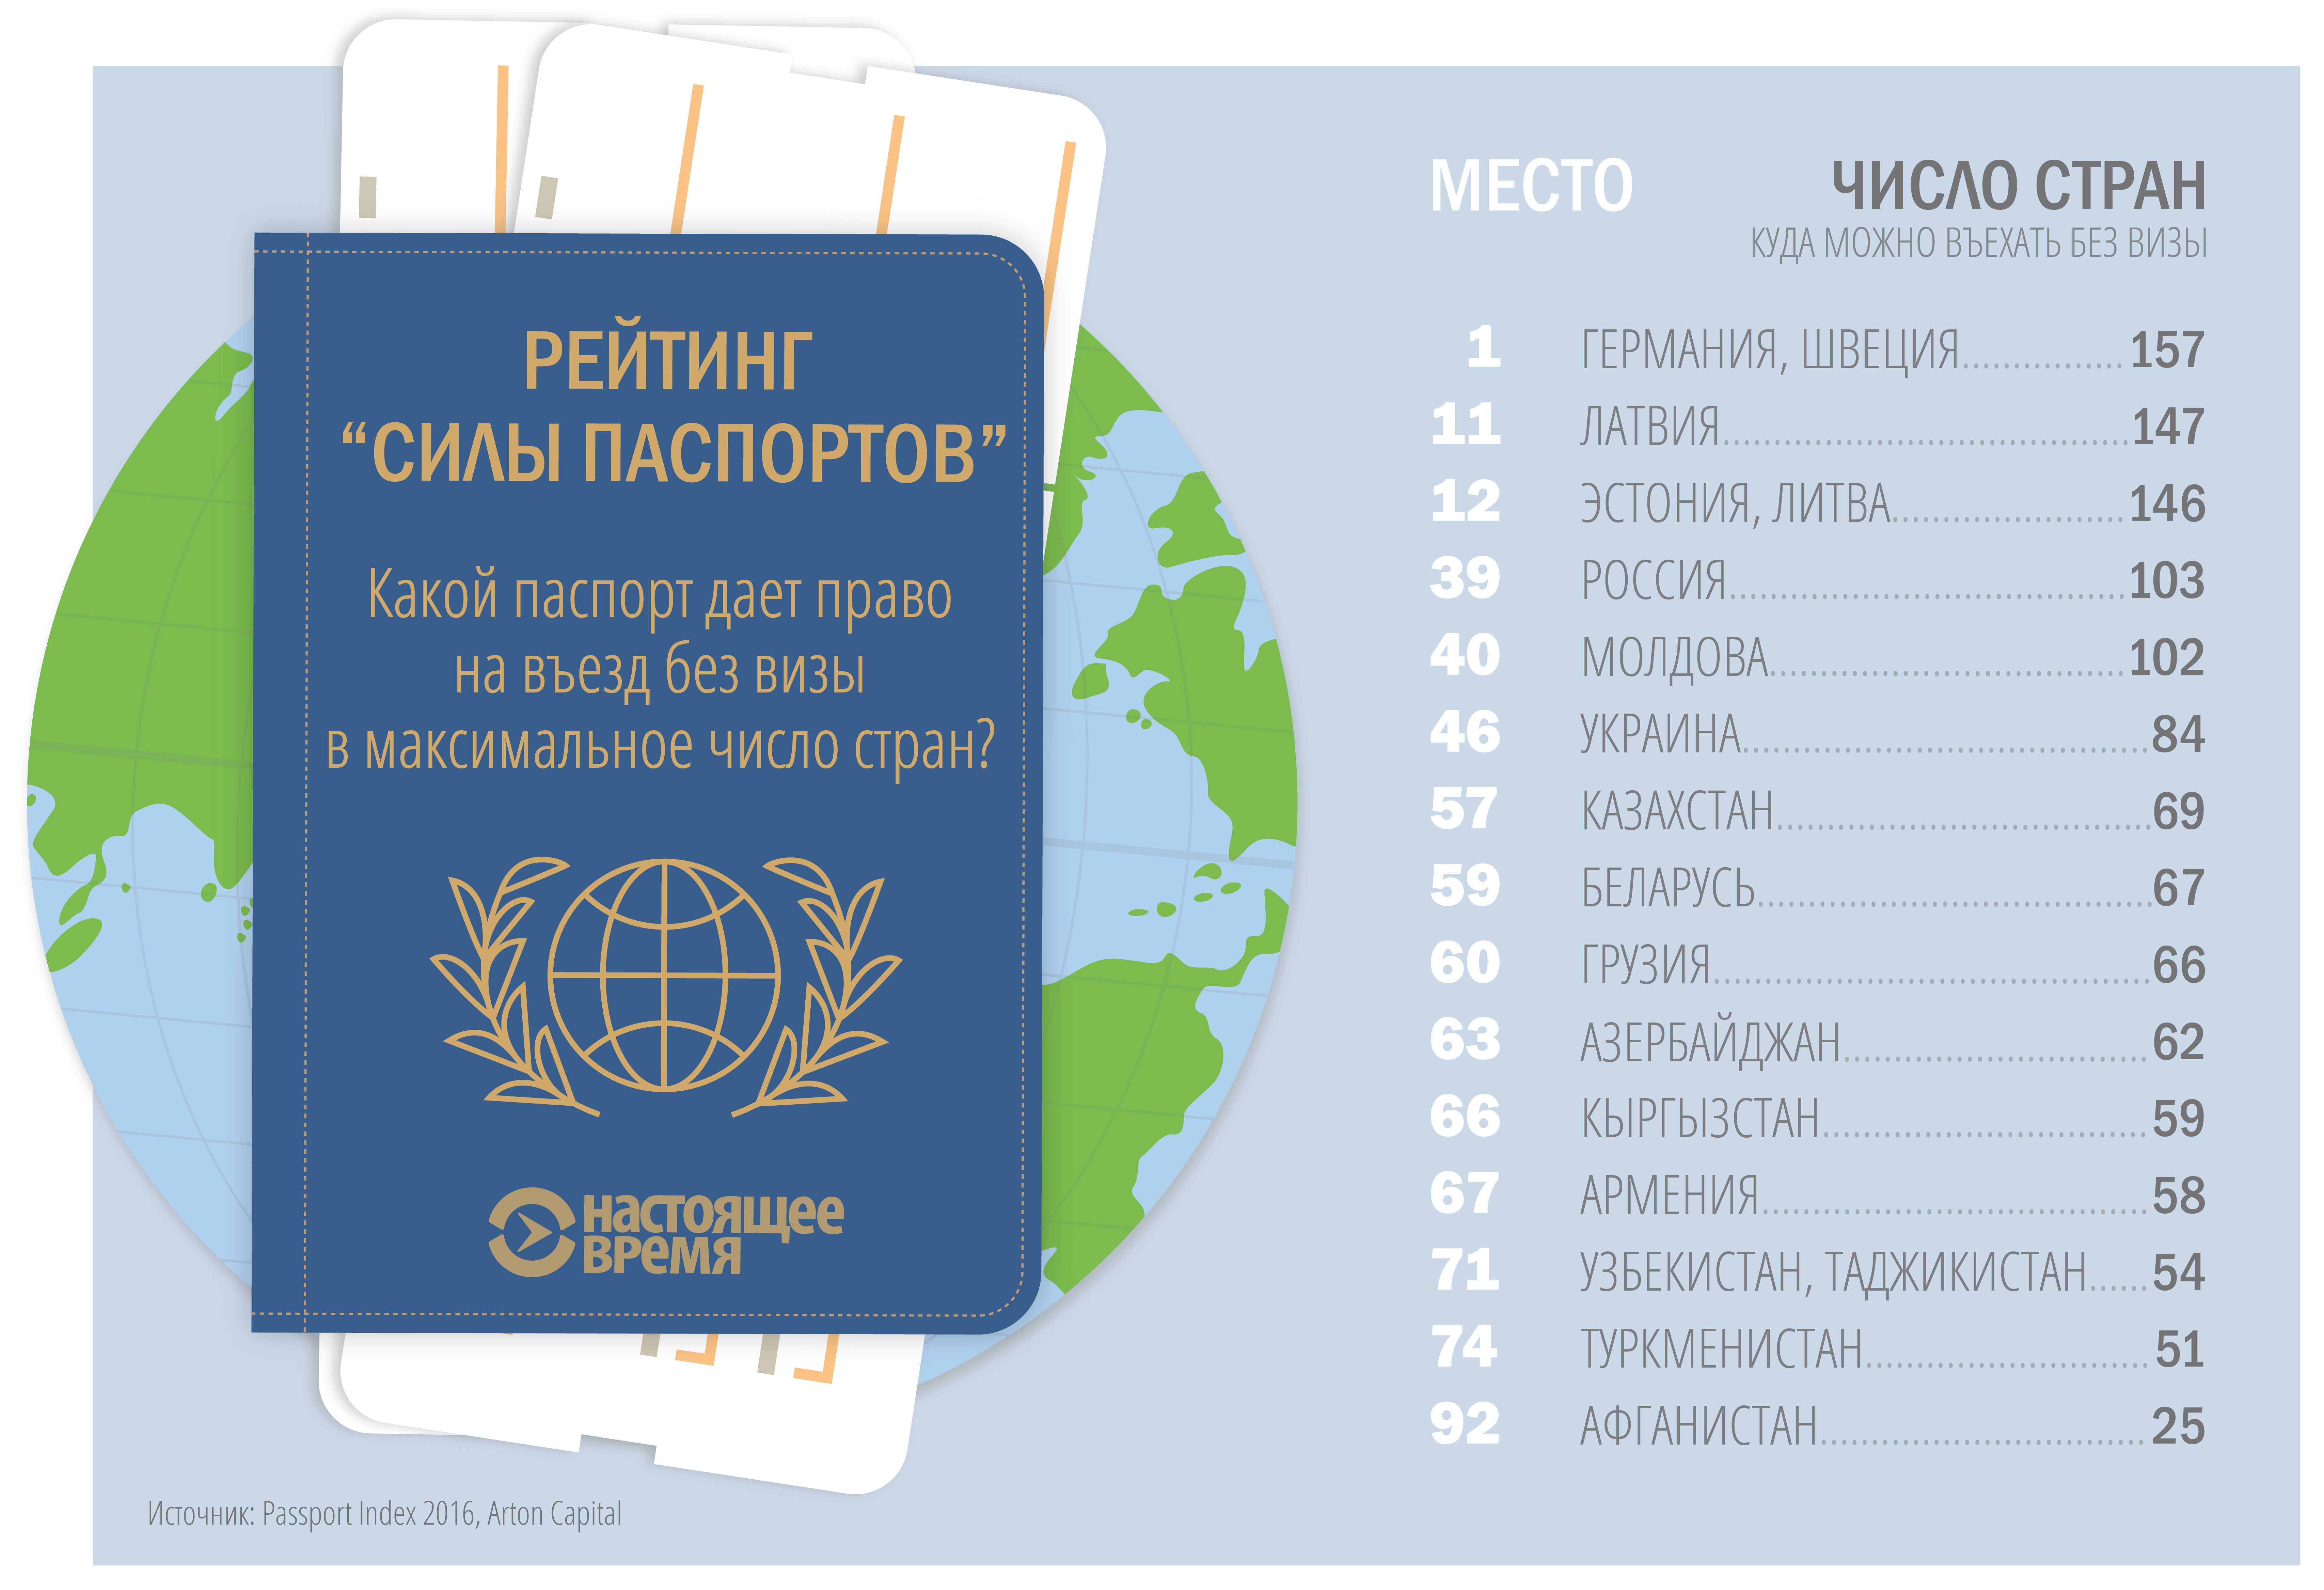 В какой стране выдали мой паспорт, если я получил его в консульстве за рубежом?